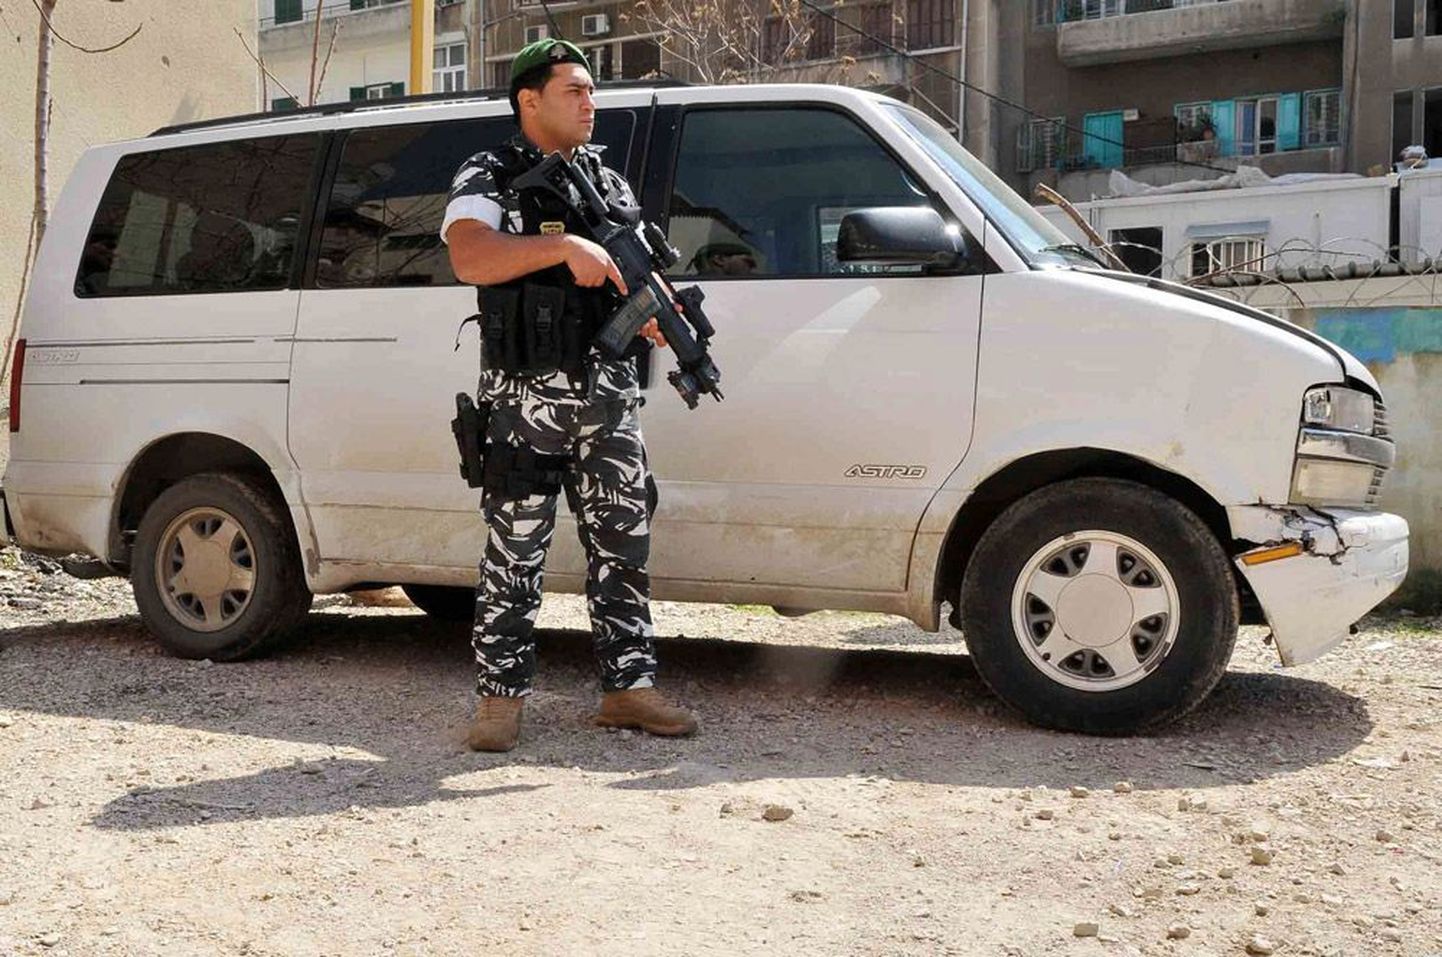 Liibanoni julgeolekujõudude (ISF) eile avaldatud foto kaubikust, mida pantvangistajad seitsme eesti ratturi röövimisel väidetavalt kasutasid.